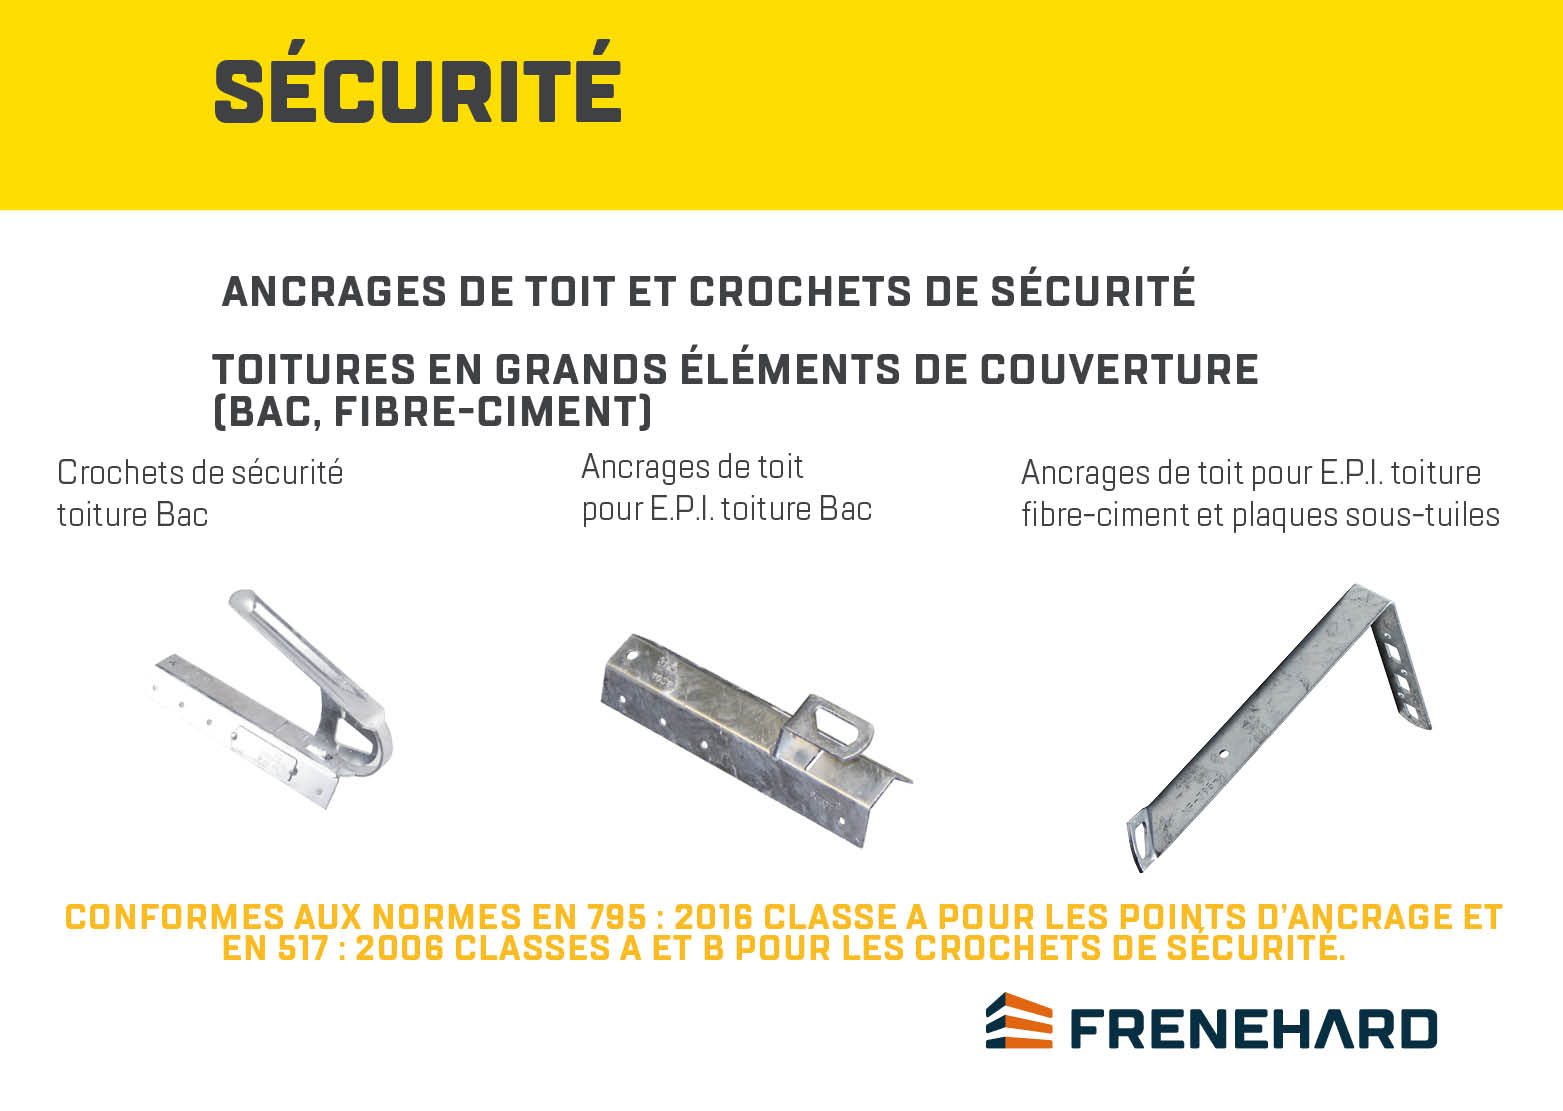 Solutions_Sécurité-Ancrages_FRENEHARD_2.jpg